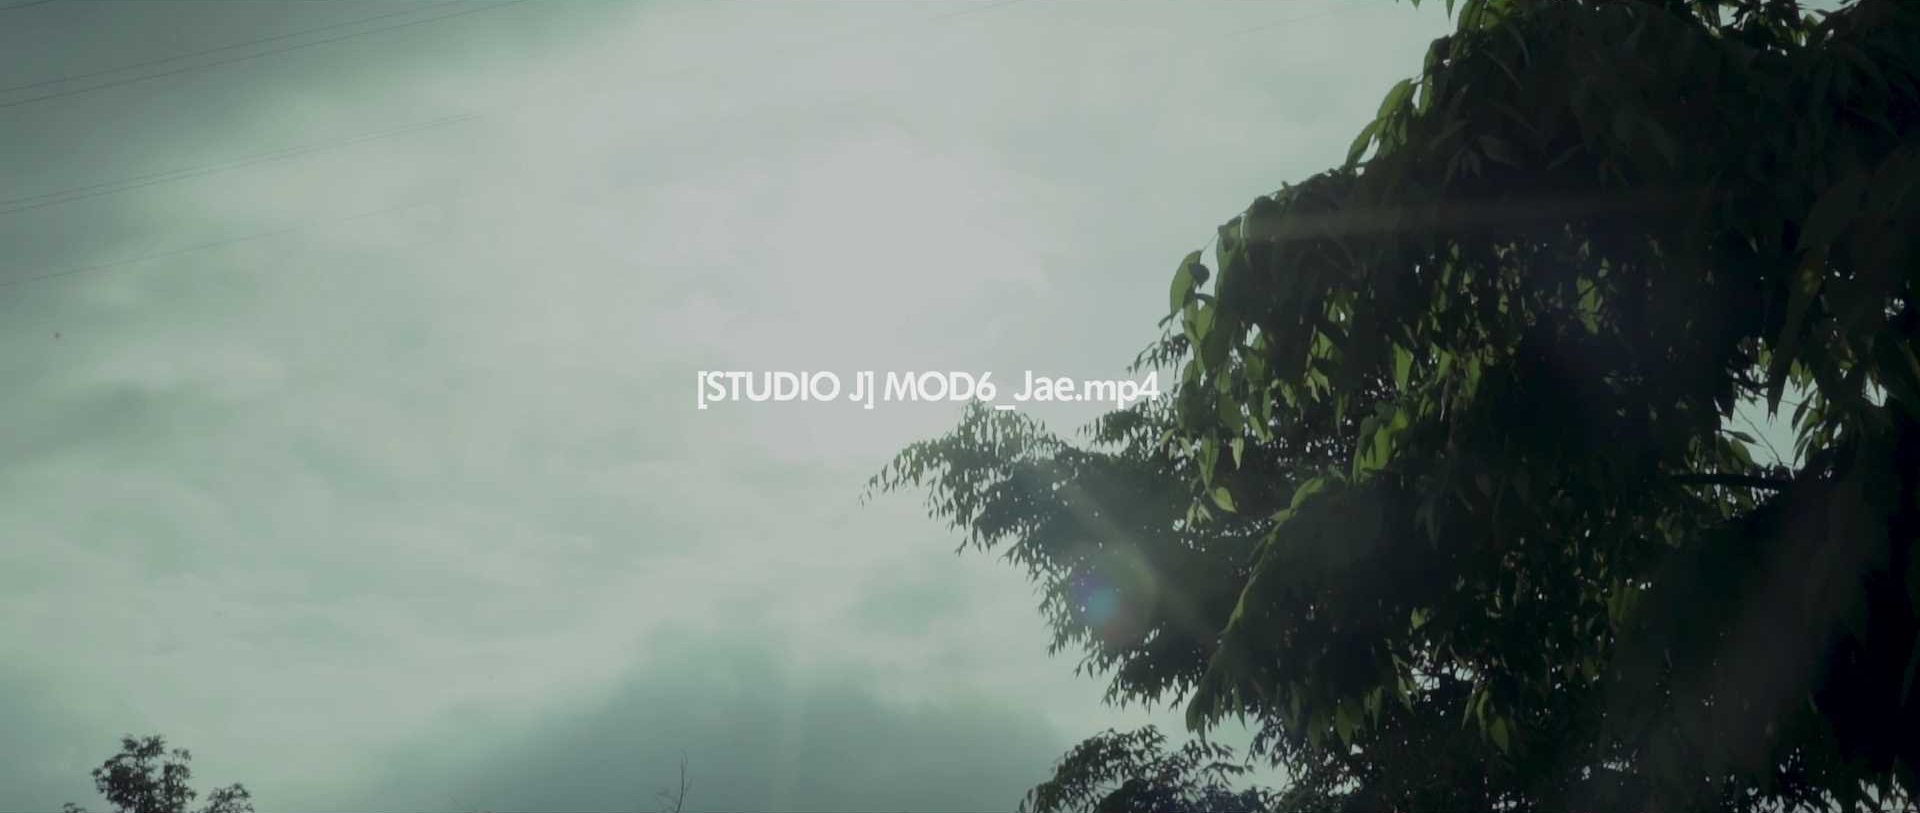 [STUDIO J] MOD6_Jae.mp4